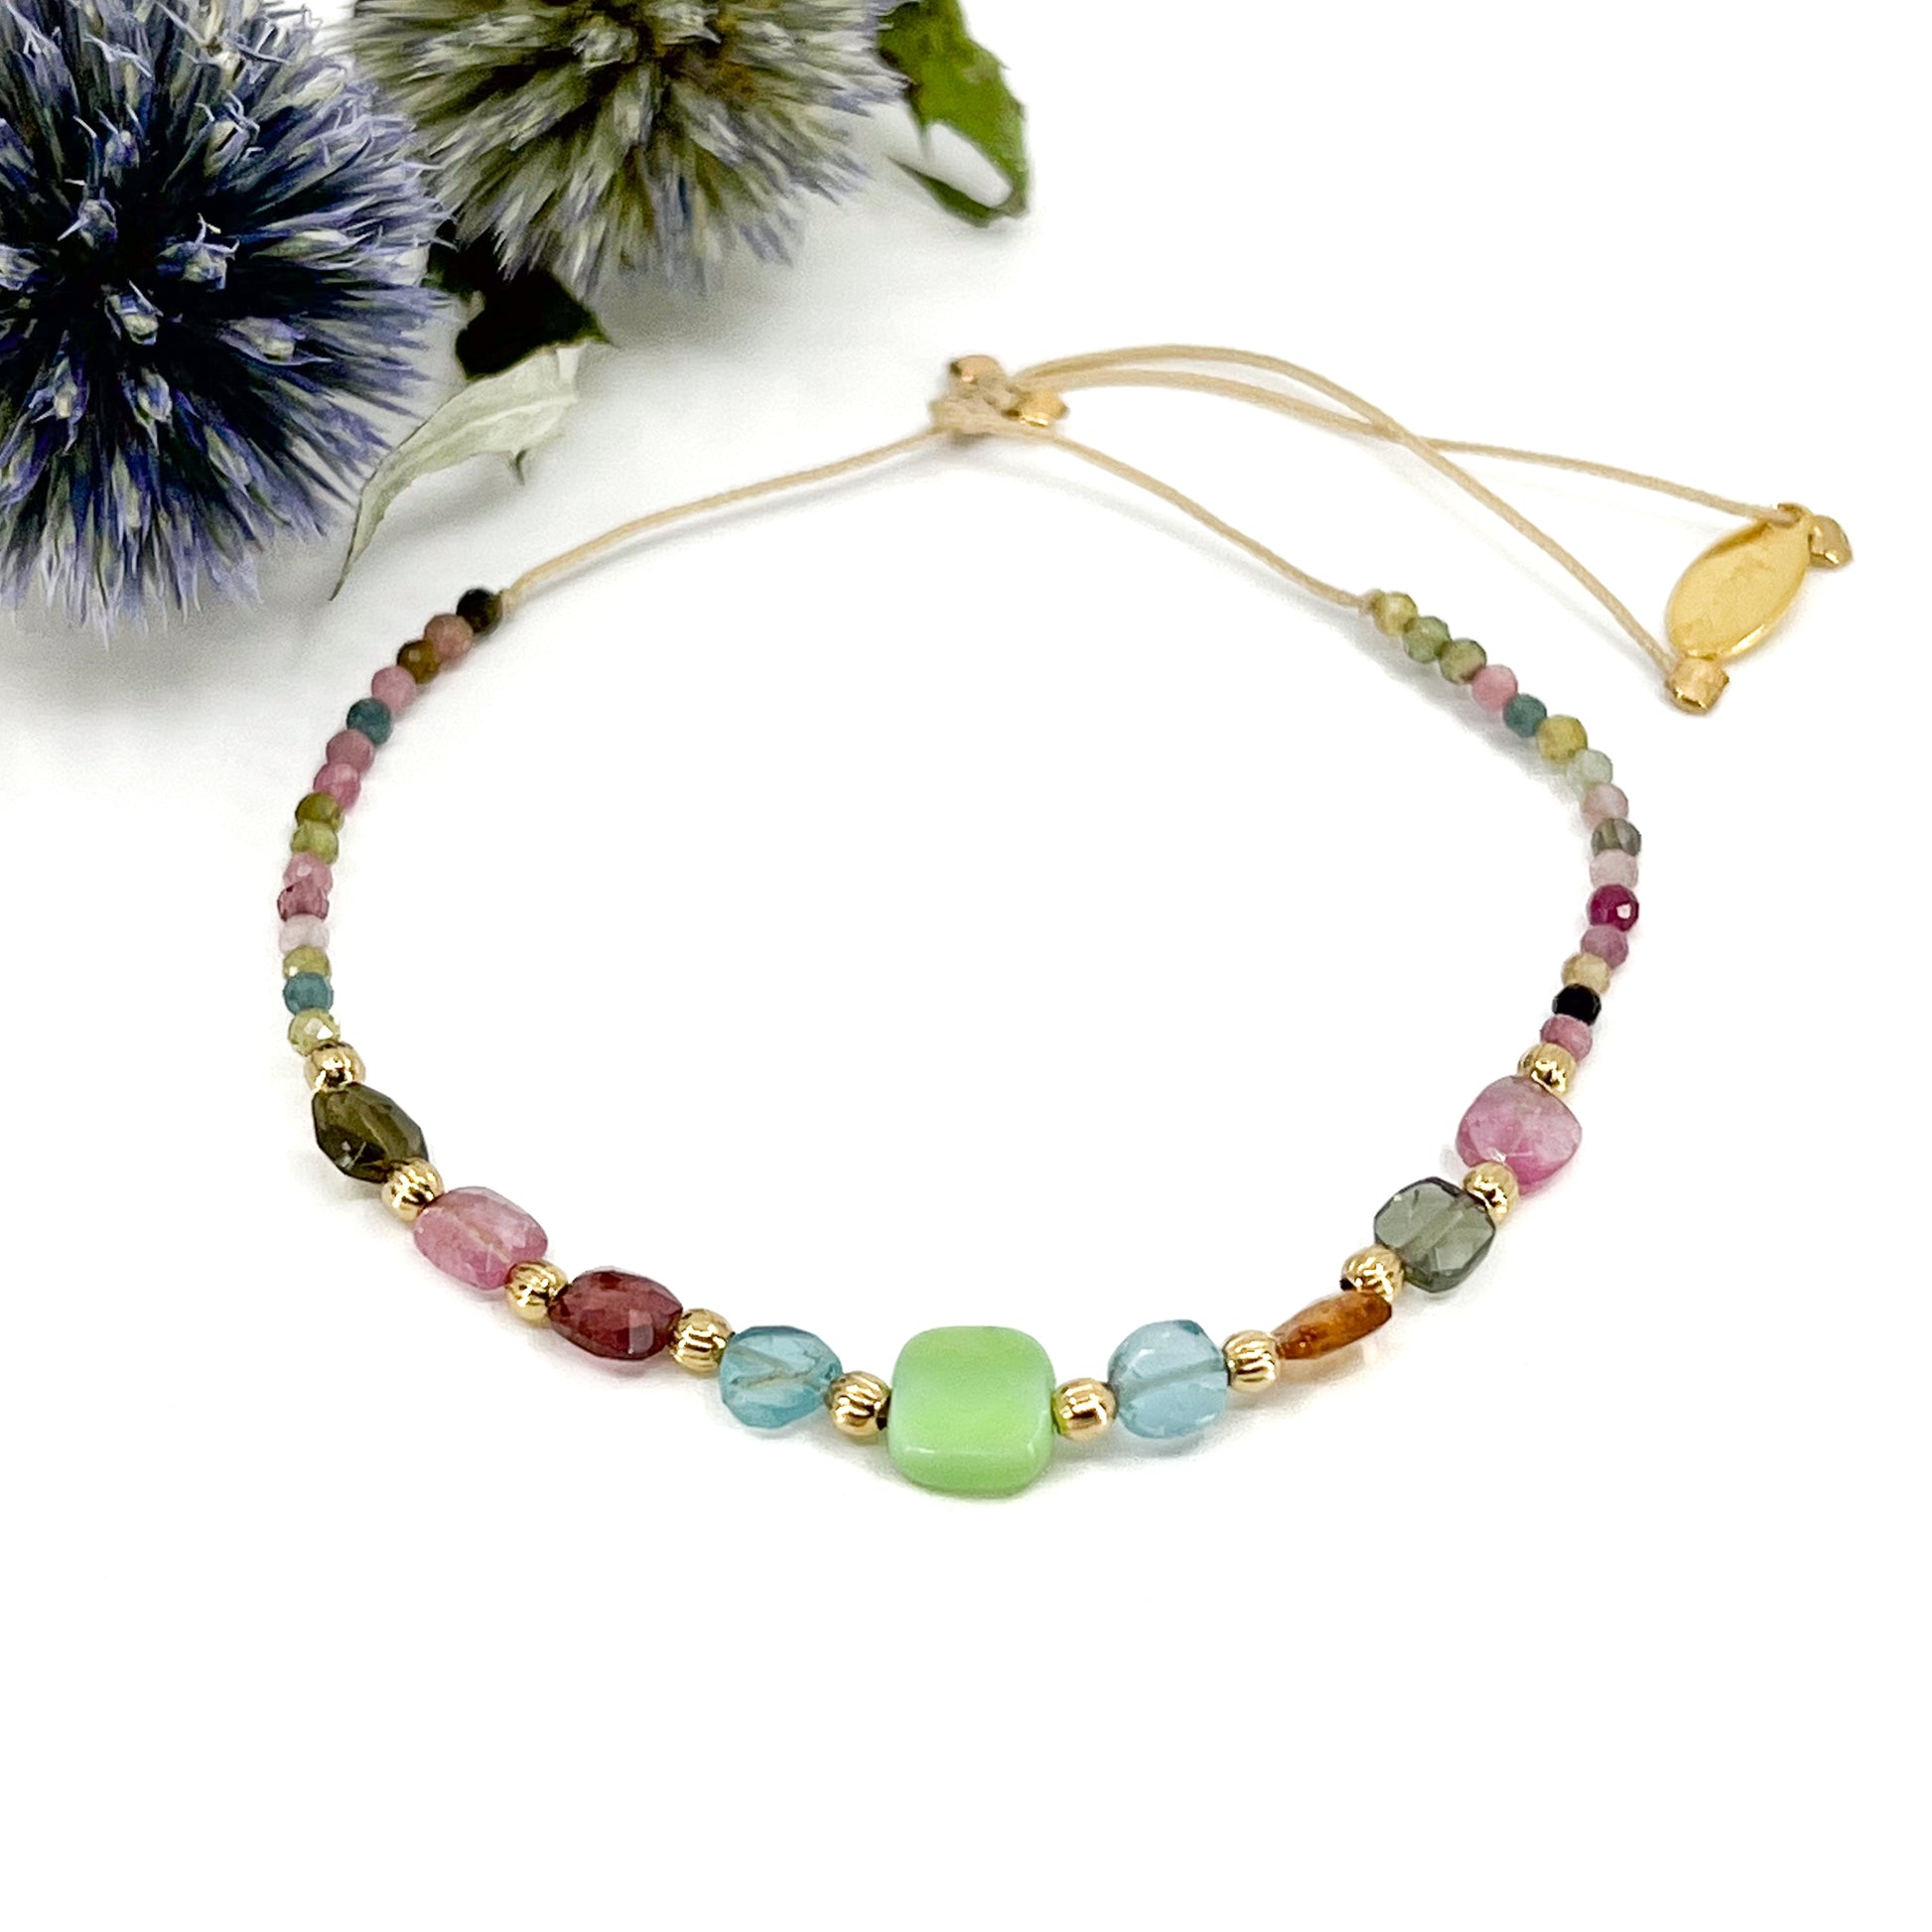 Bracelet ajustable en pierres fines naturelles. Au centre une Agathe d'Herbe carrée verte. Encadrée de six Tourmalines multicolores et deux Aigue-marine.